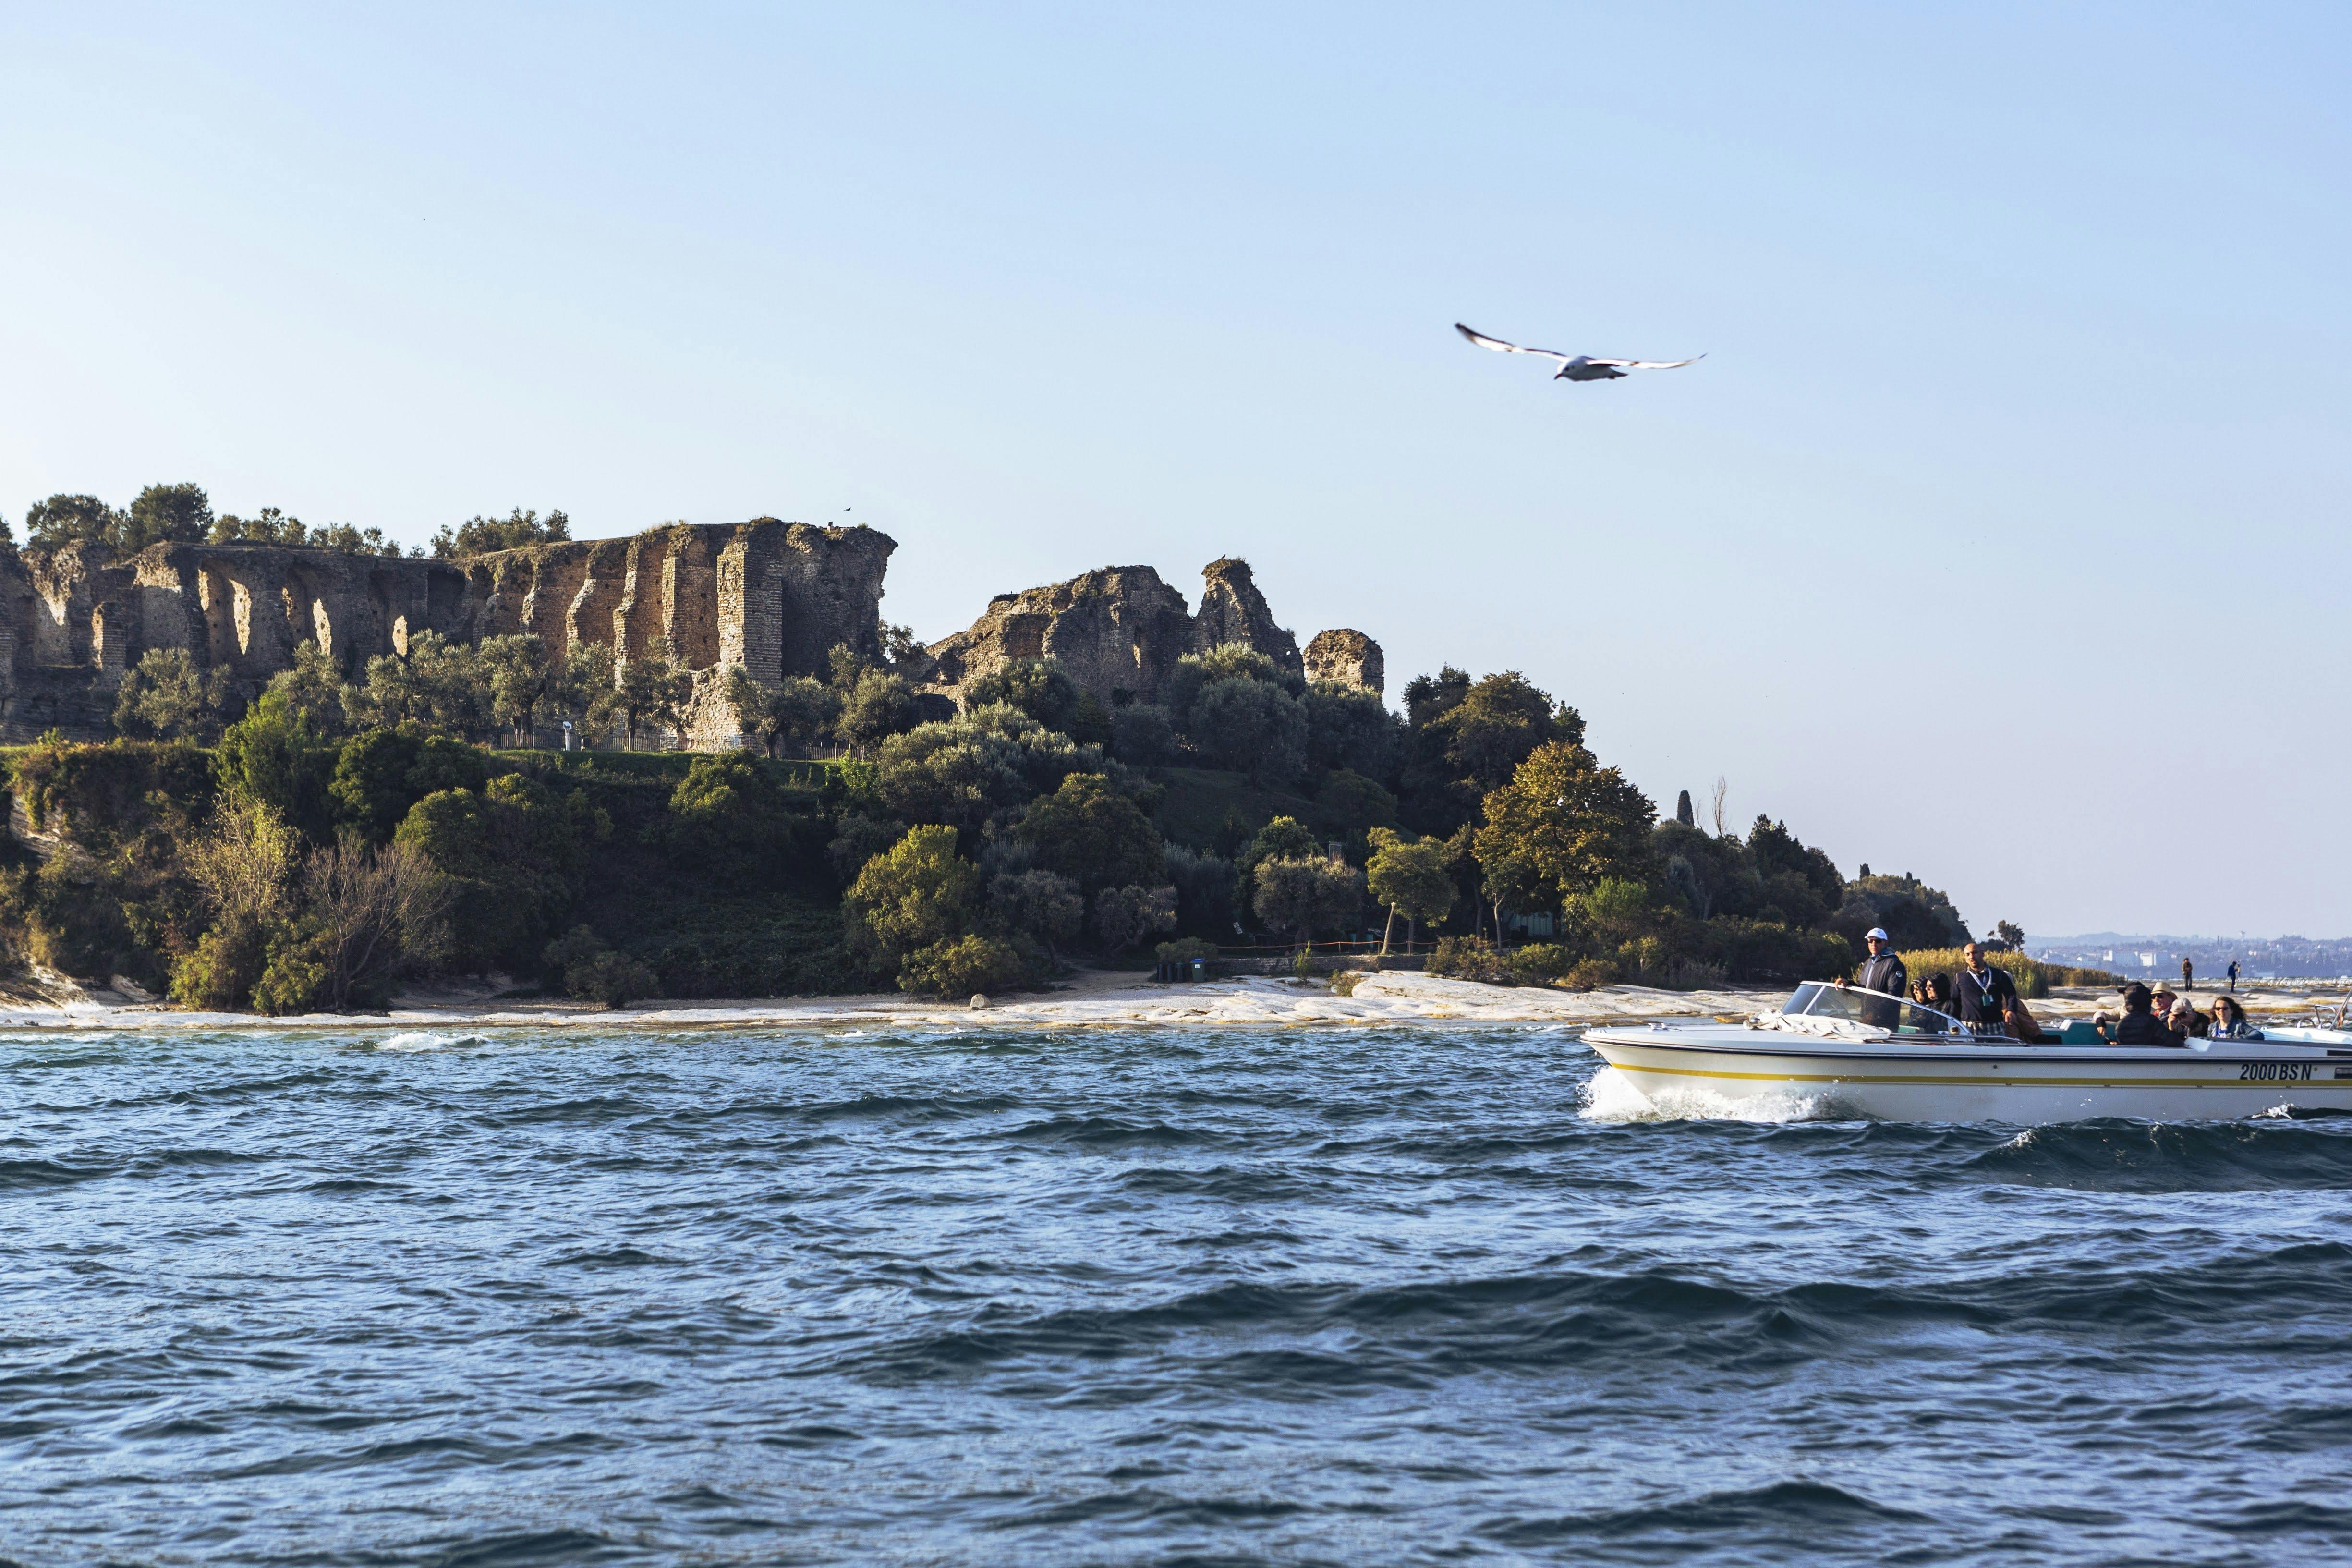 Tour of Sirmione Peninsula on Lake Garda